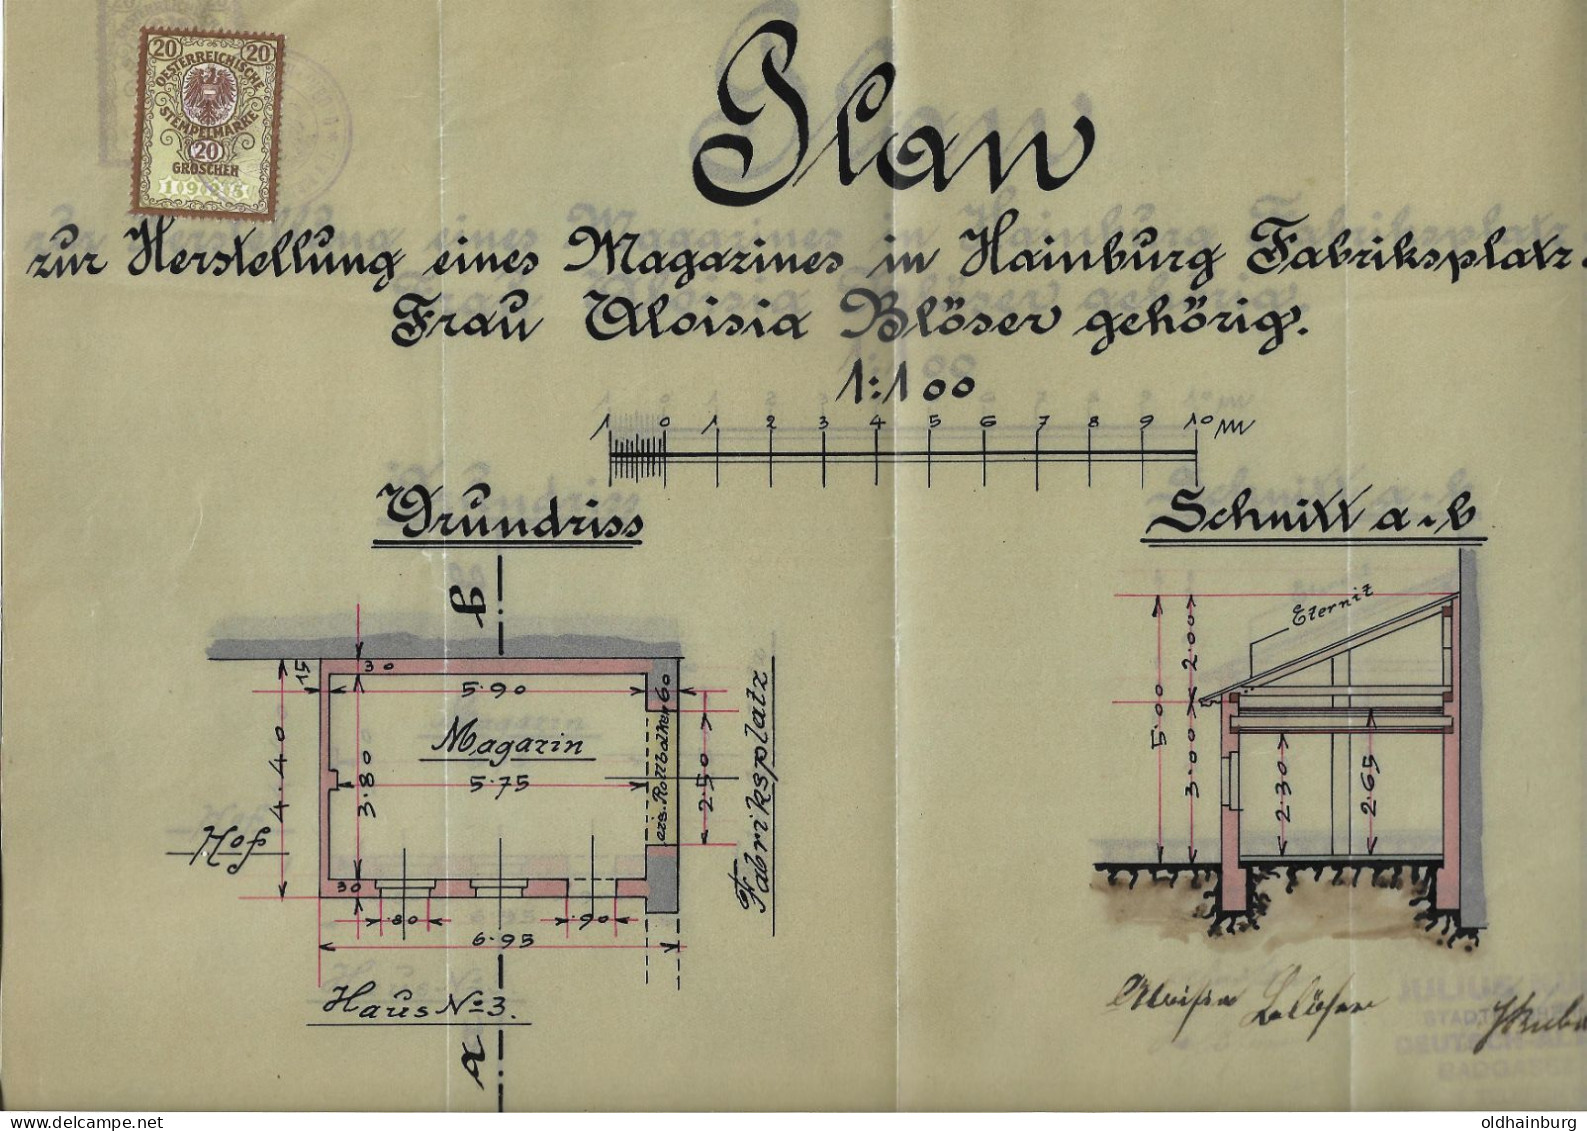 1112q: Fiskal- Beleg Behördliches Dokument 1925, 20 Groschen, Hainburg An Der Donau, Fabriksplatz 3 - Fiscaux